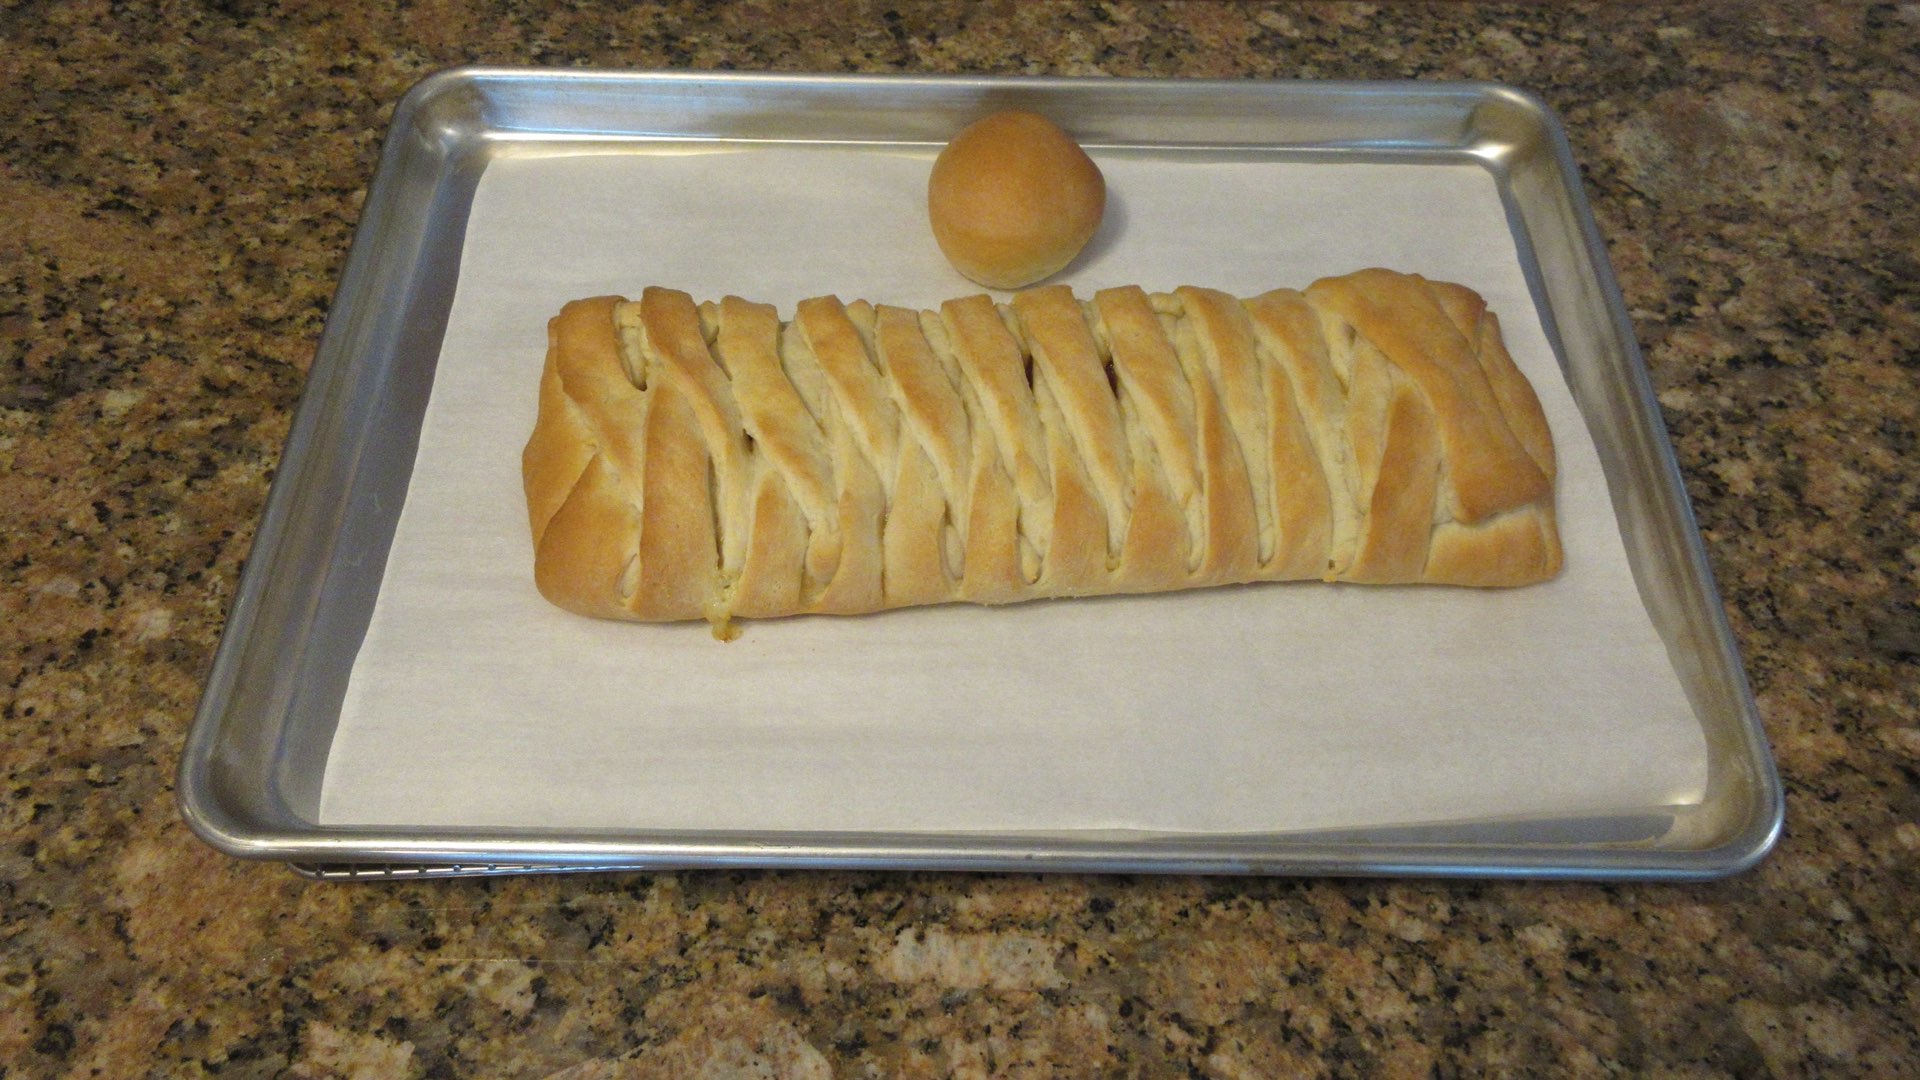 stuffed braided bread